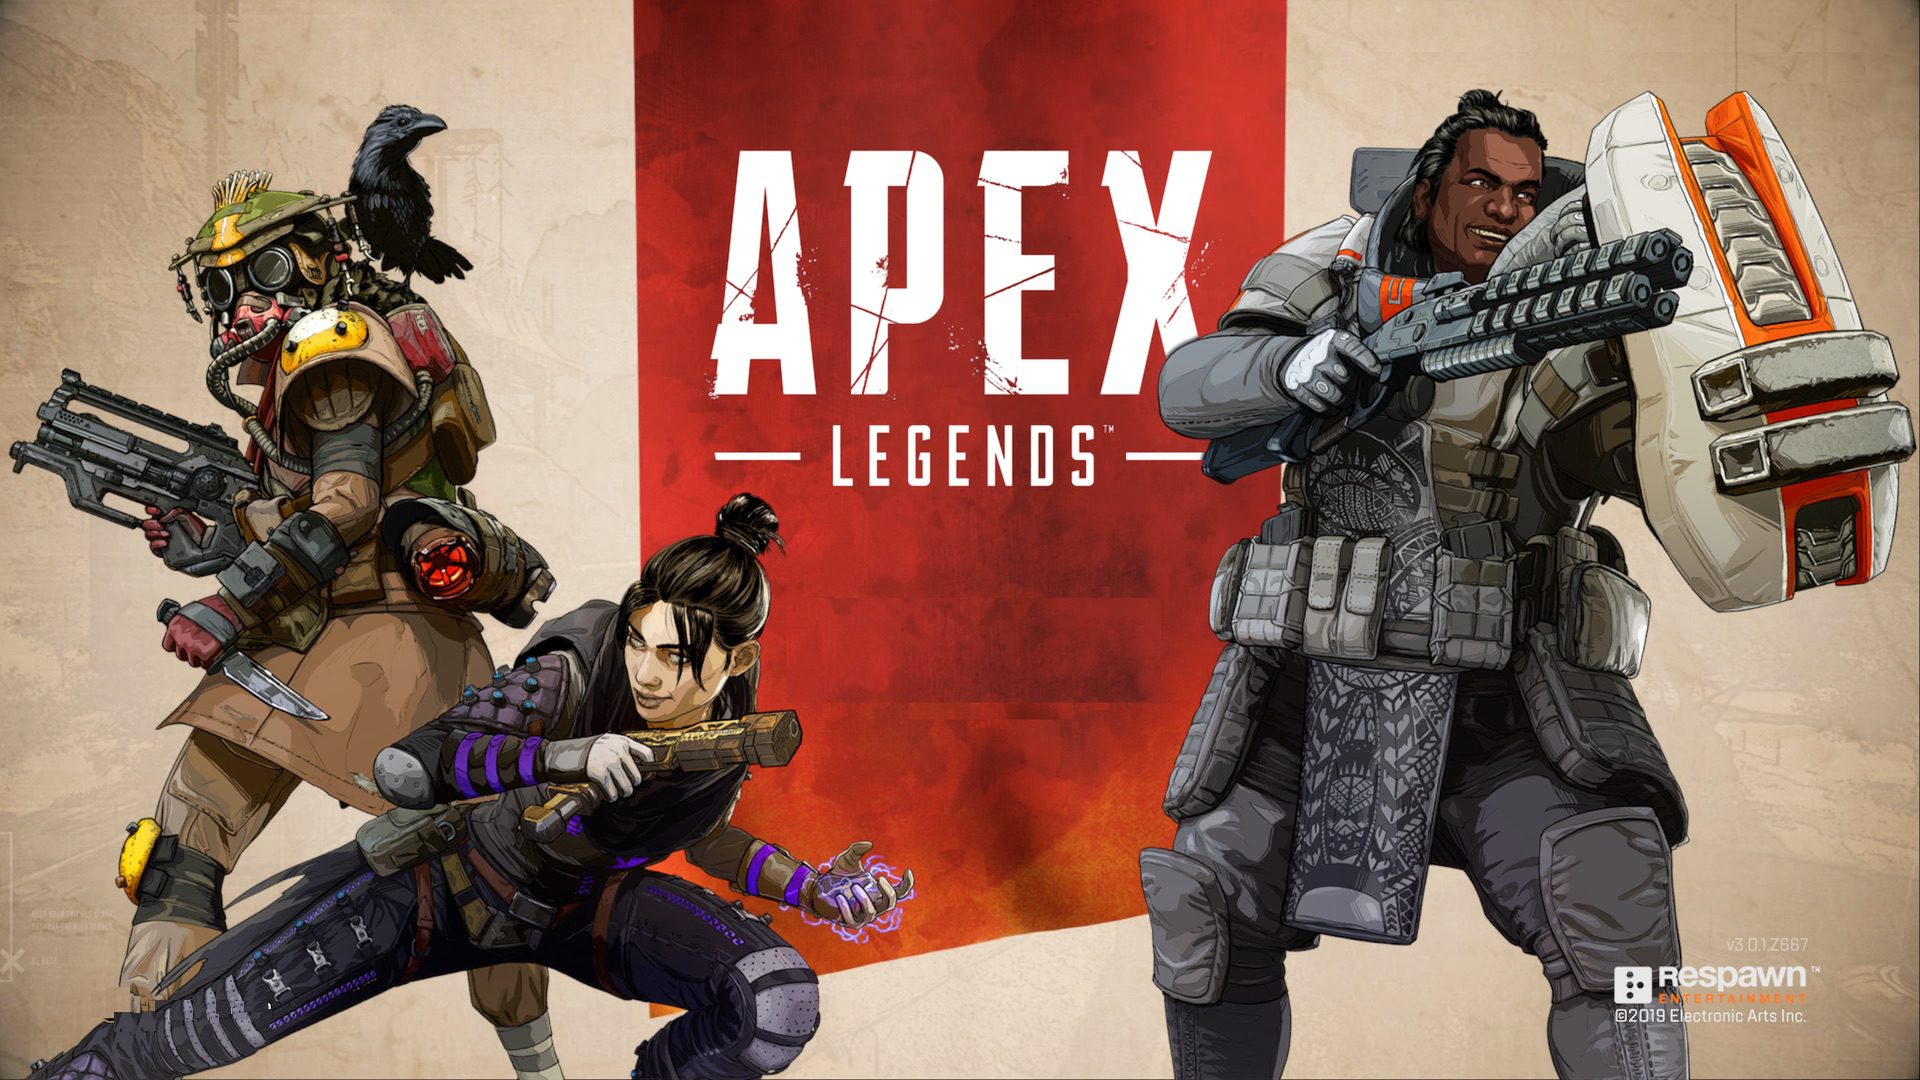 El Crossplay De Apex Legends Con Pc Solo Estara Activo Si Jugamos Con Alguien De Esta Plataforma